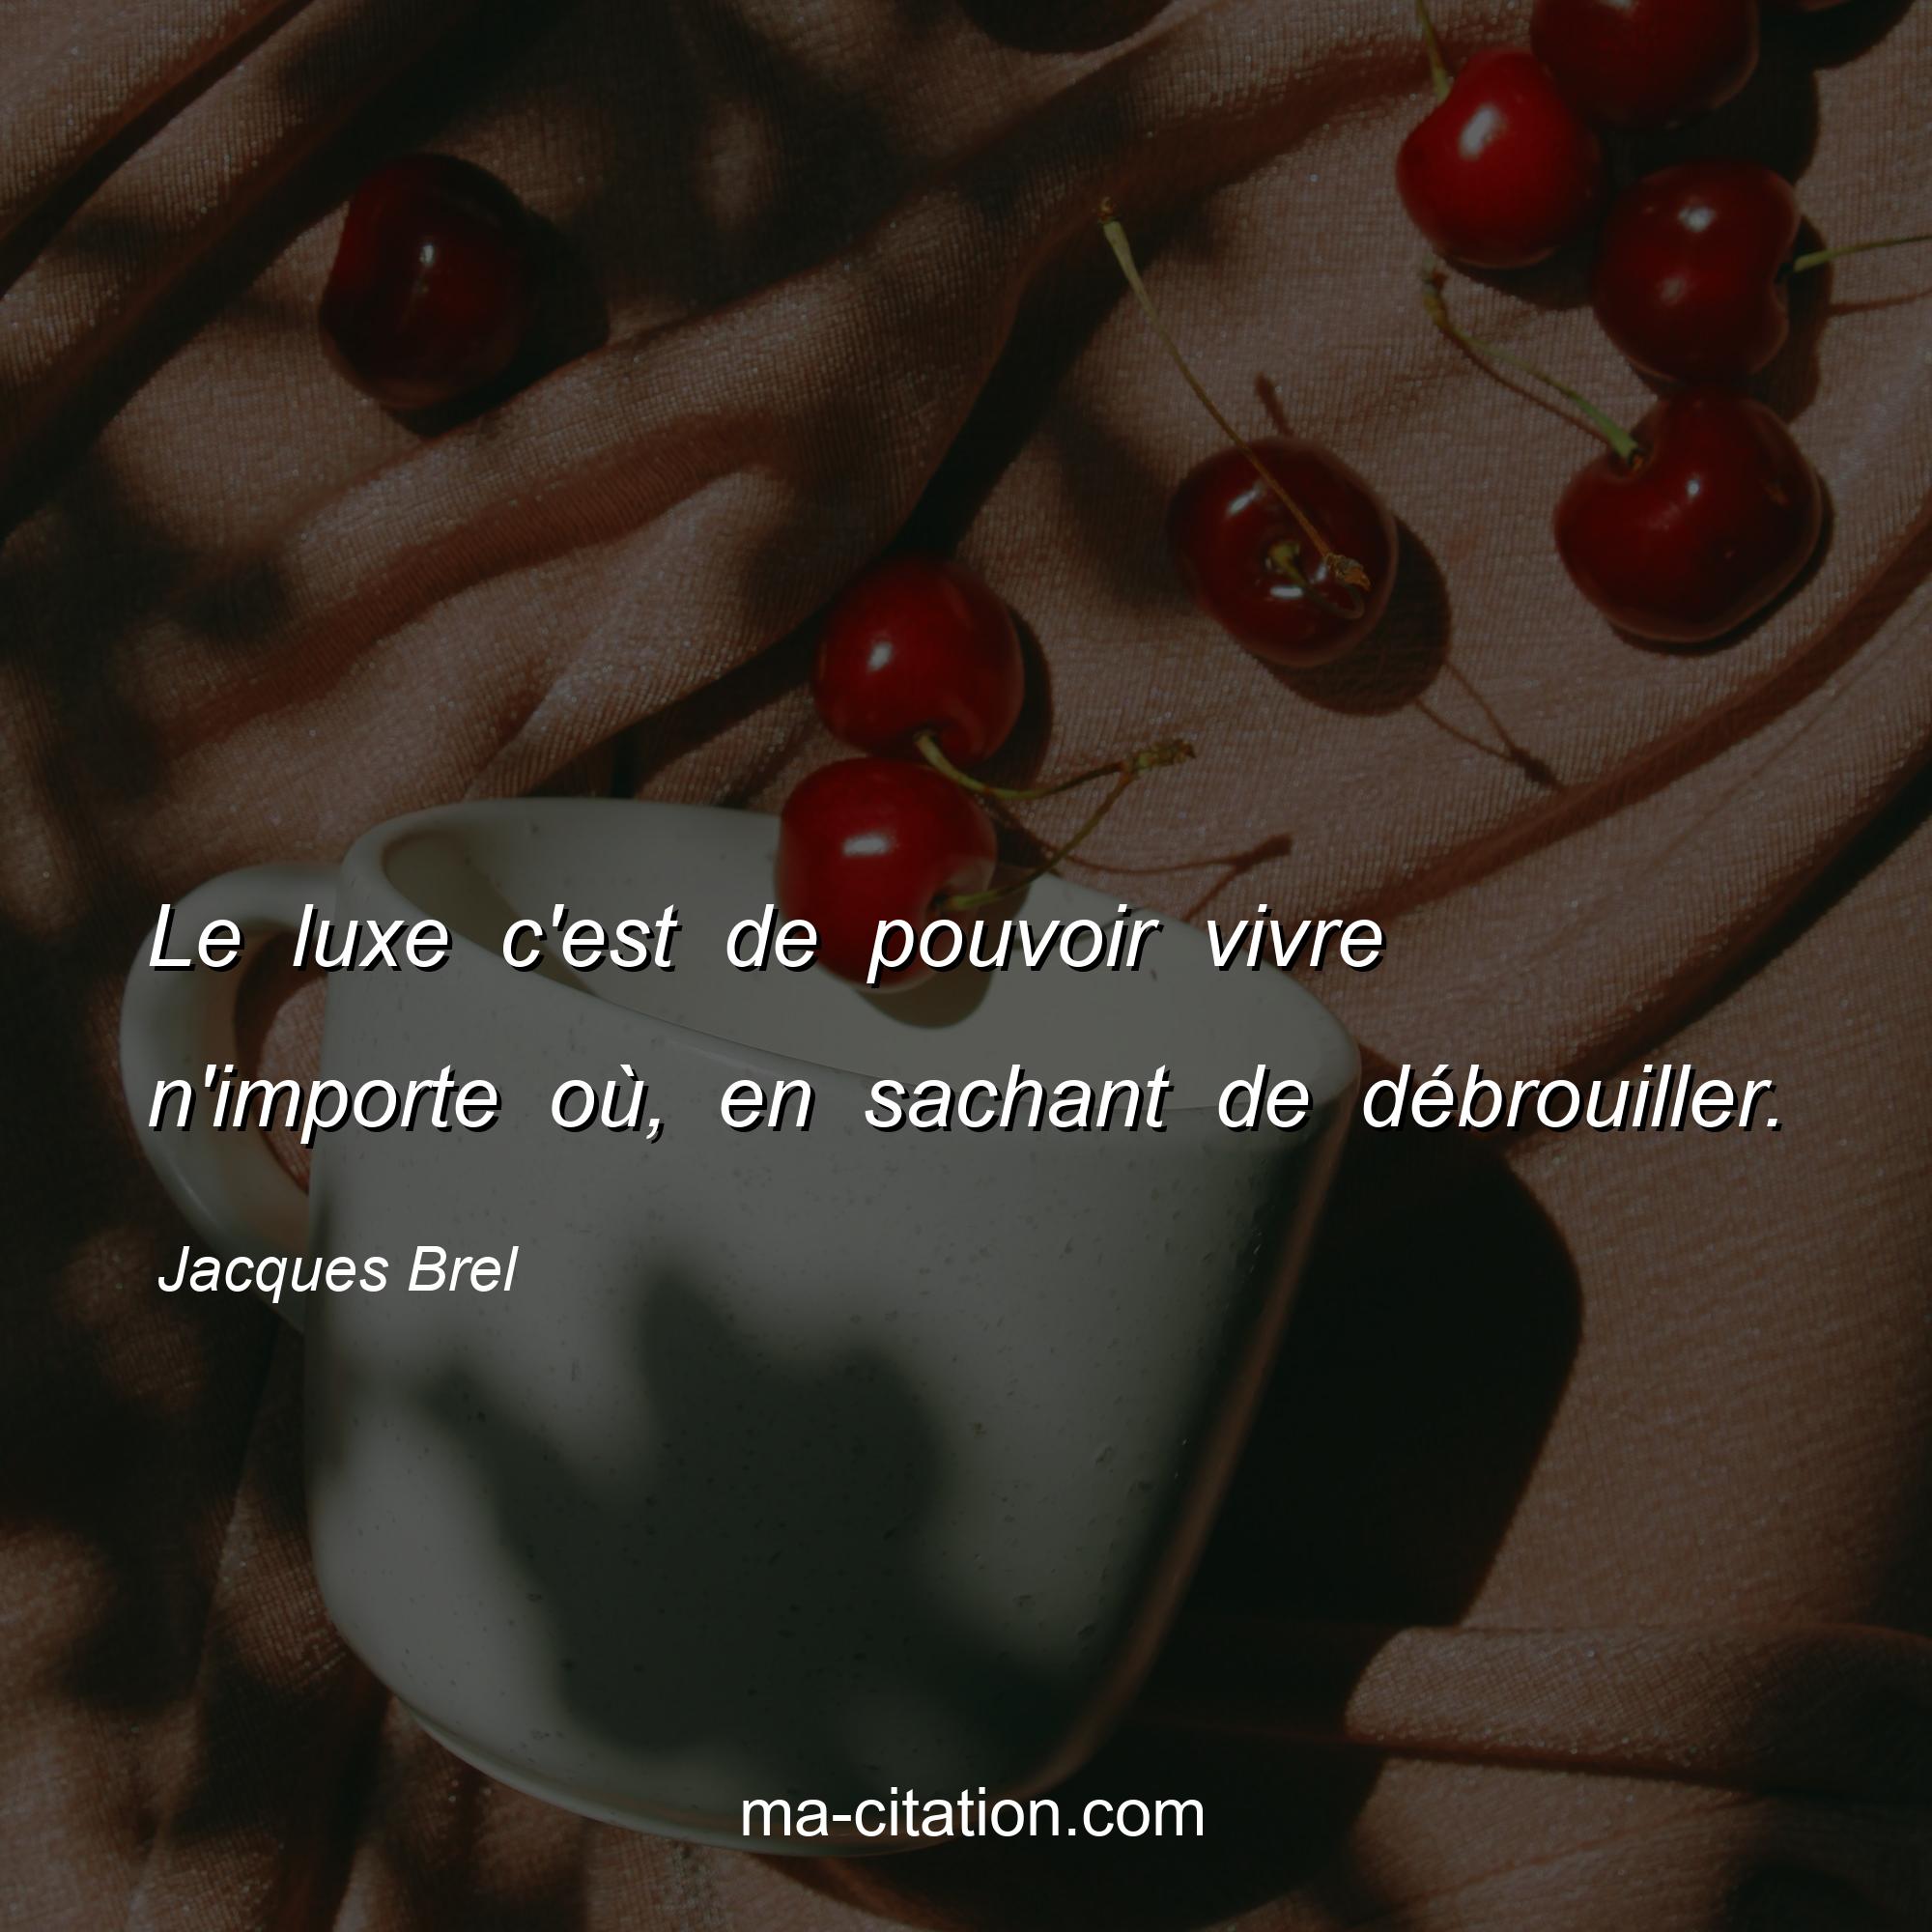 Jacques Brel : Le luxe c'est de pouvoir vivre n'importe où, en sachant de débrouiller.